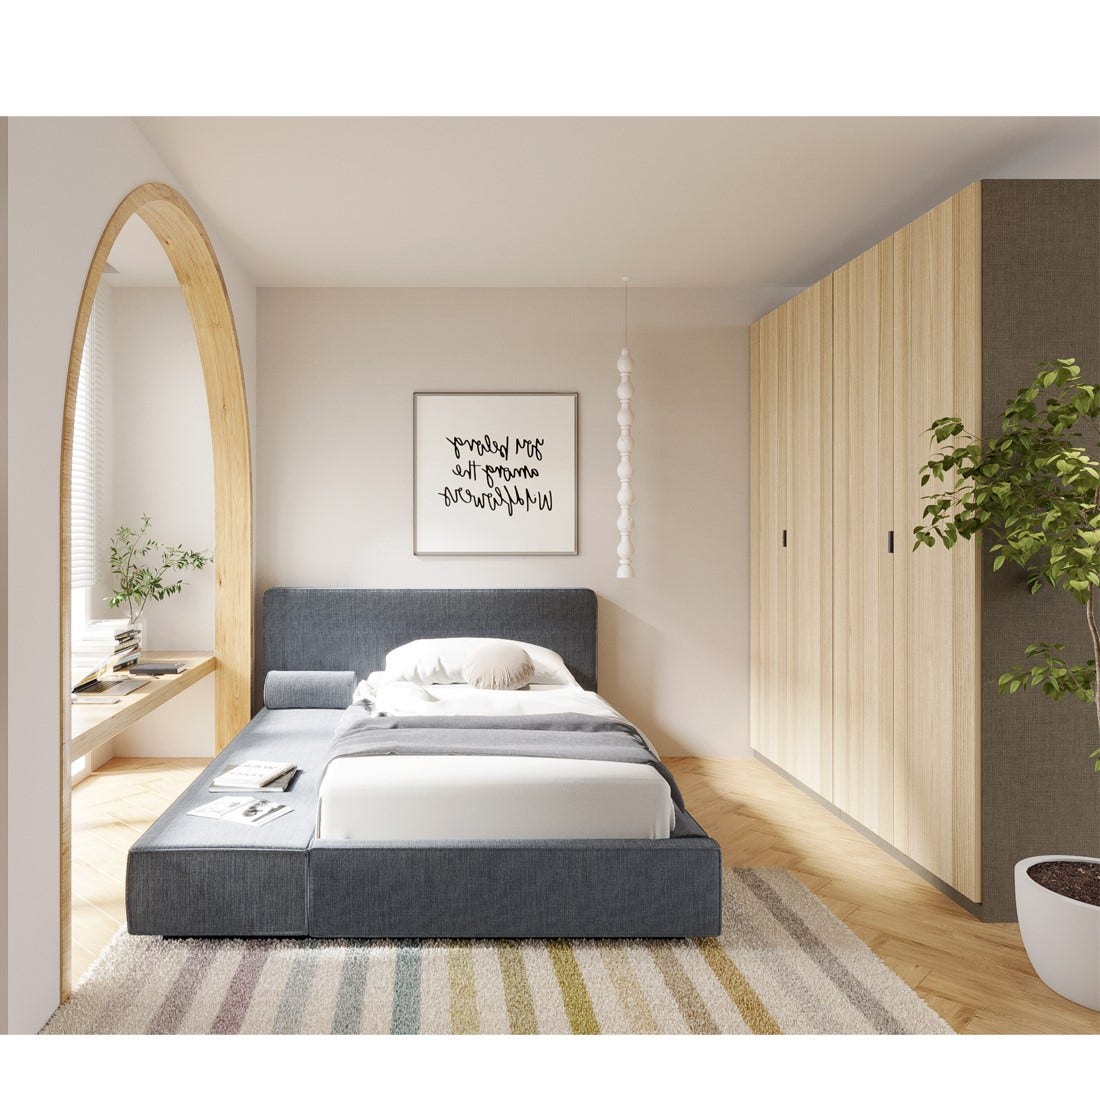 เตียงนอน 3.5 ฟุต รุ่น Lavique (ด้านซ้าย) สีเทา5